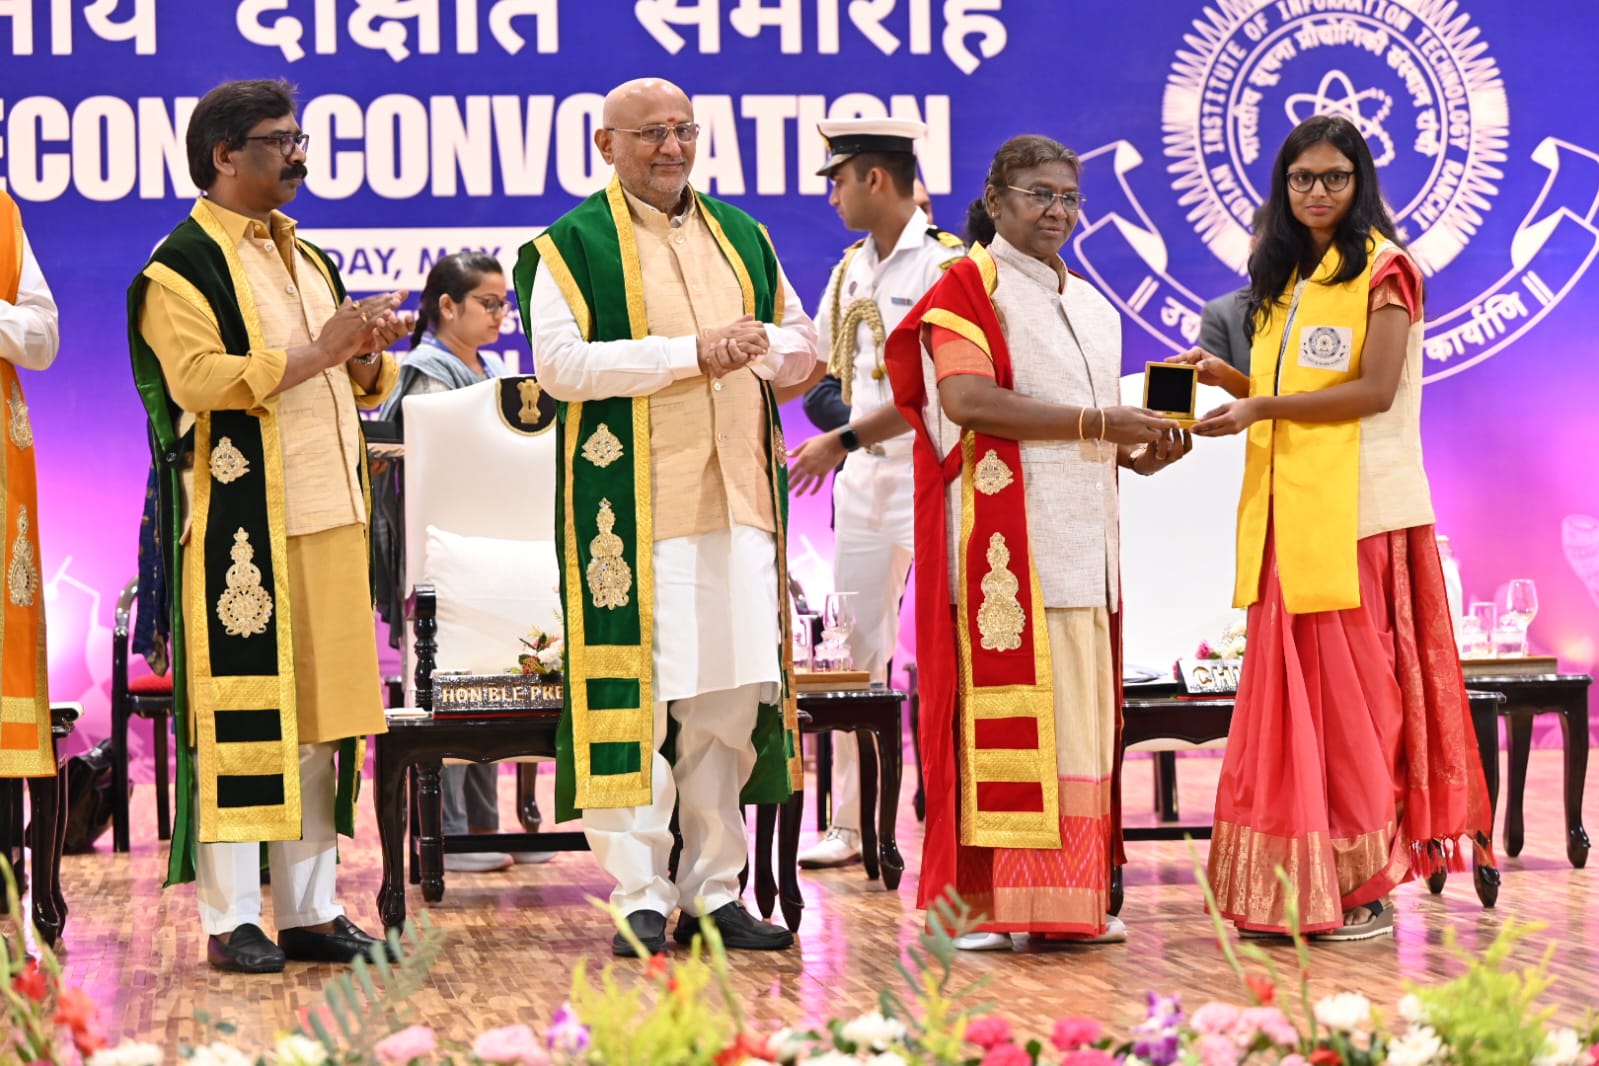 IIIT दीक्षांत समारोह : बेटियों के सम्मान में राष्ट्रपति ने बजवाई तालियां, 10 पदक विजेताओं में 8 लड़कियां शामिल-IIIT convocation: President applauds in honor of daughters, 8 girls among 10 medal winners